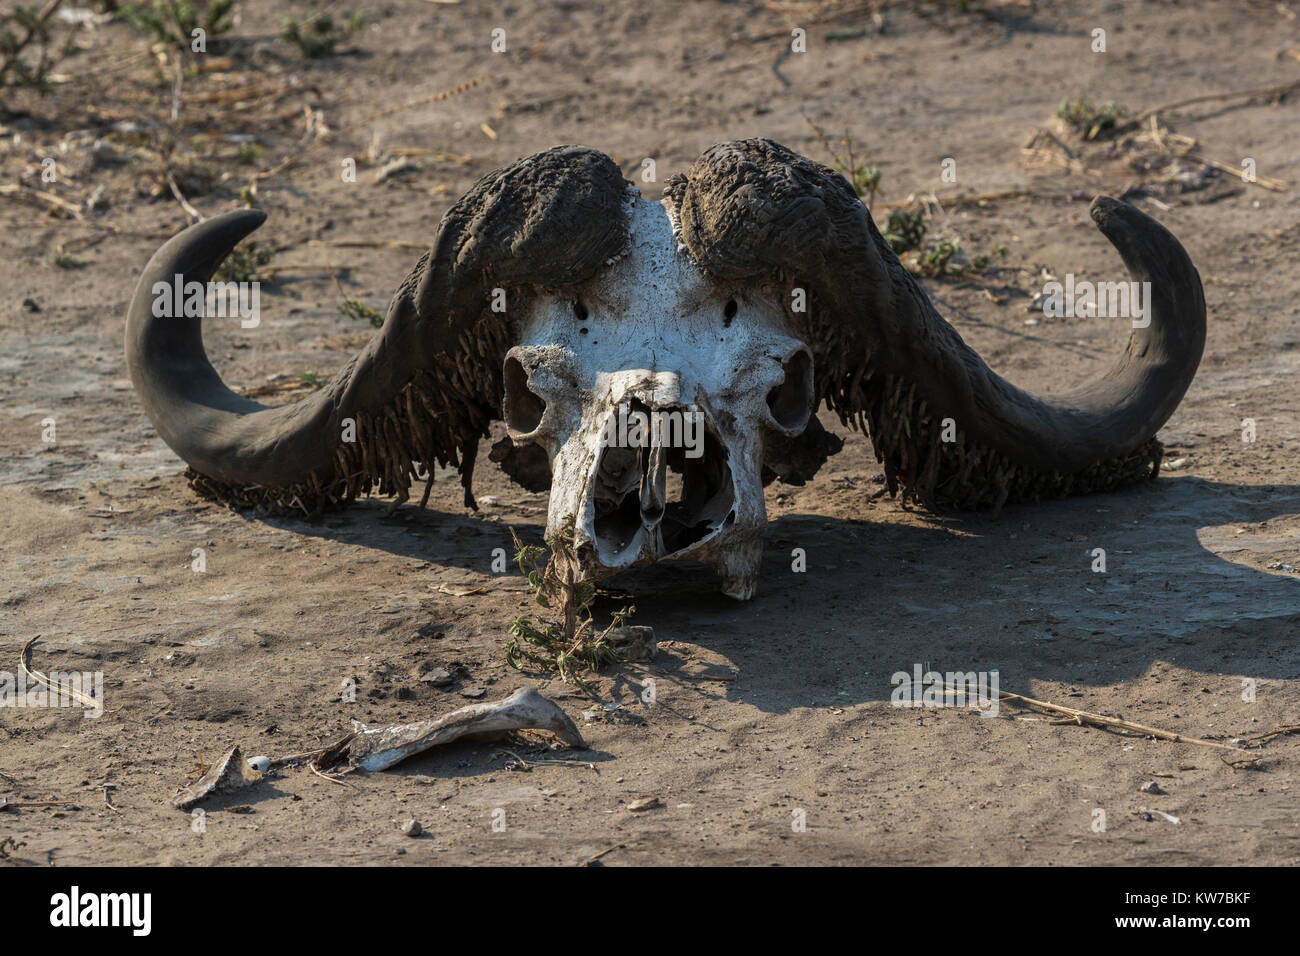 Cape buffalo (Syncerus caffer) skull, with larval cases of horn moth sp., Chobe National Park, Botswana, Africa, September 2017 Stock Photo